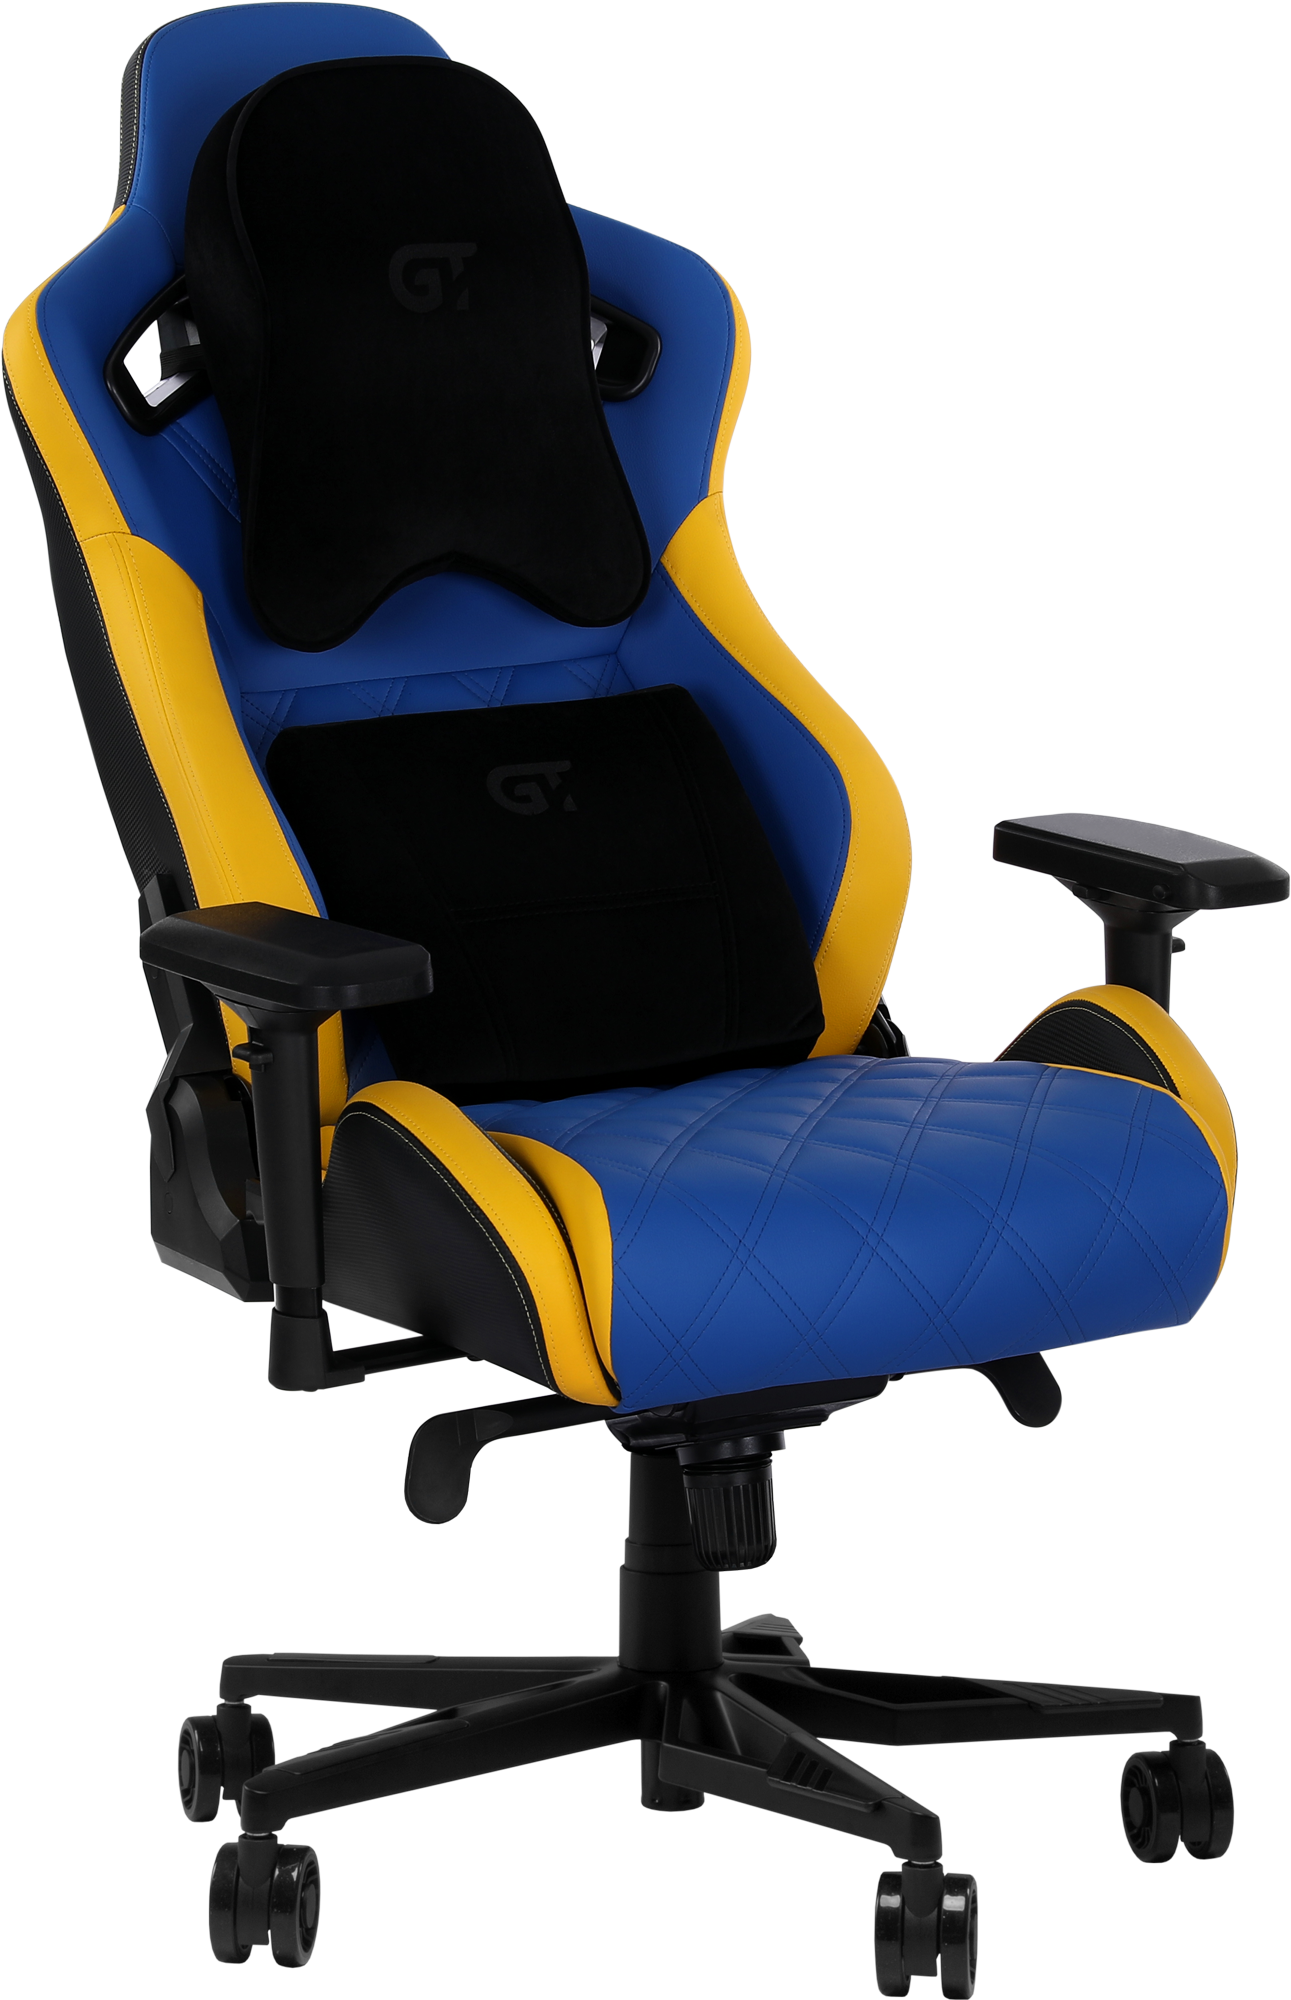 Геймерське крісло GT Racer синє з жовтим (X-0724 Blue/Yellow) - фото 5